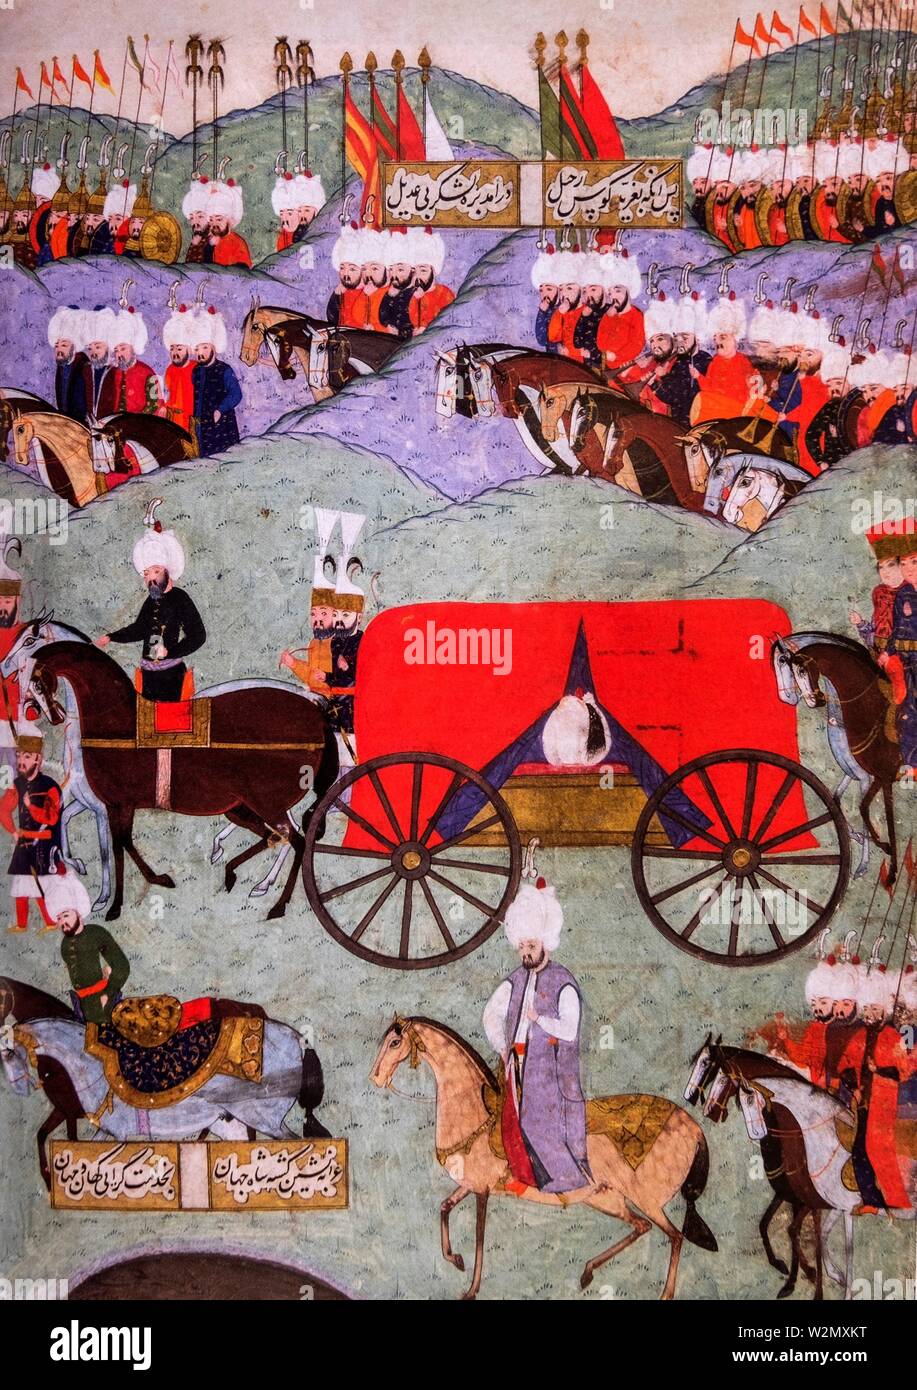 La Turchia, storia, nel settembre 1556, il corpo del sultano Solimano portati indietro a Istambul (miniture, XVIIc...Solimano il Magnifico..Suleiman io (Ottoman Foto Stock